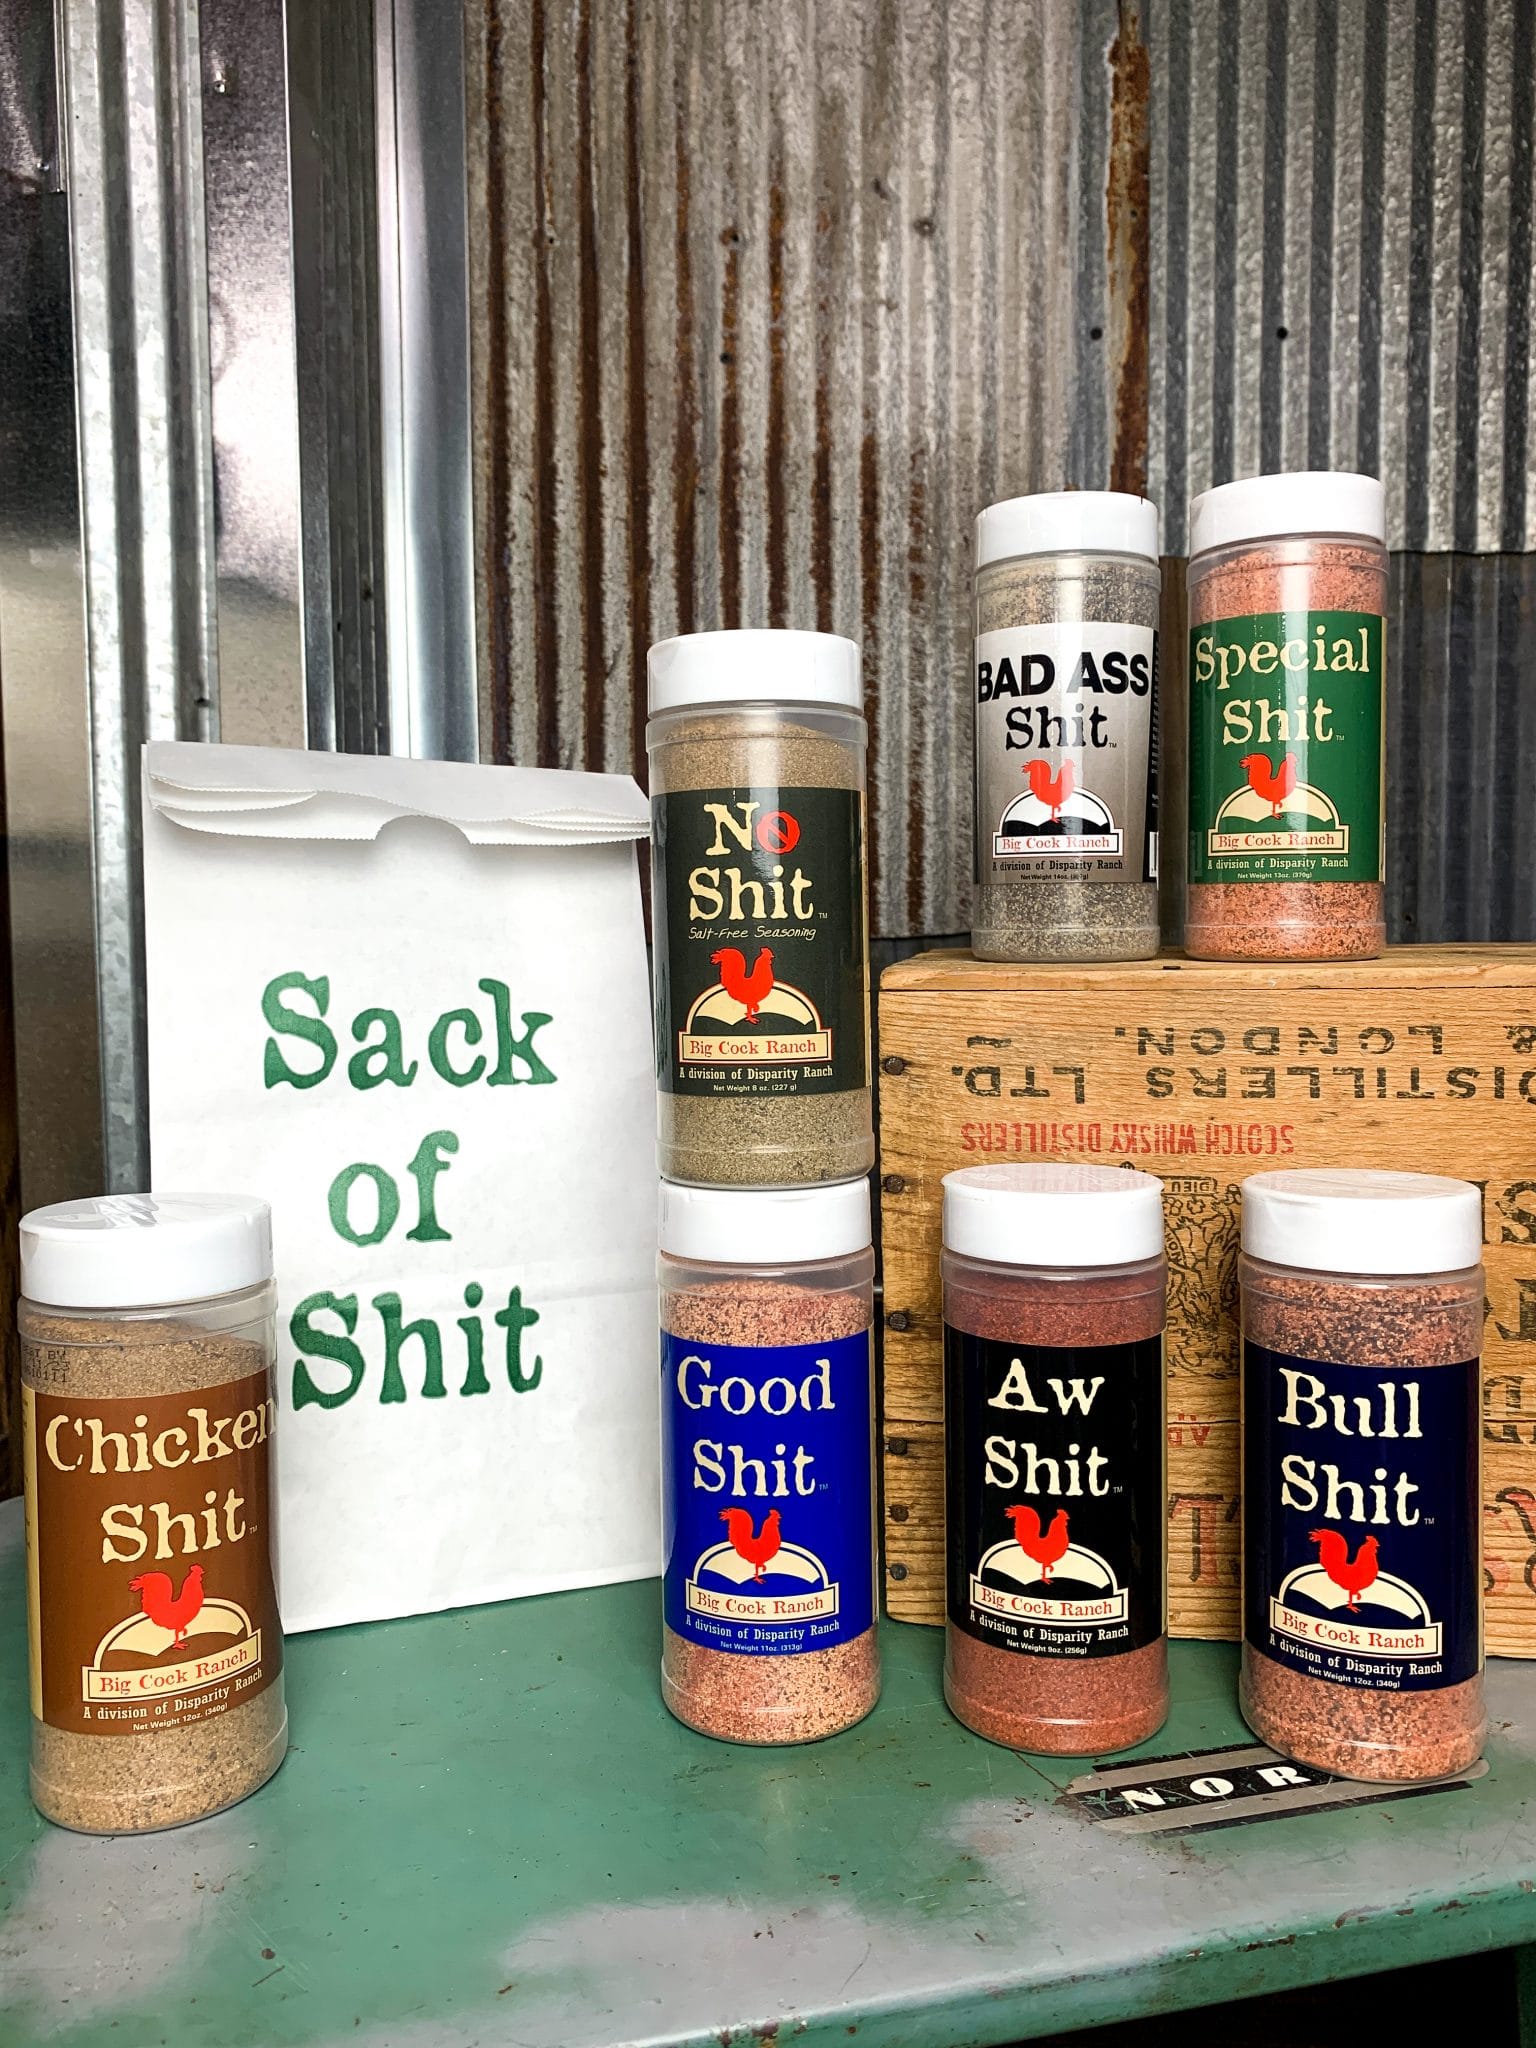 Bad Ass Shit Seasoning